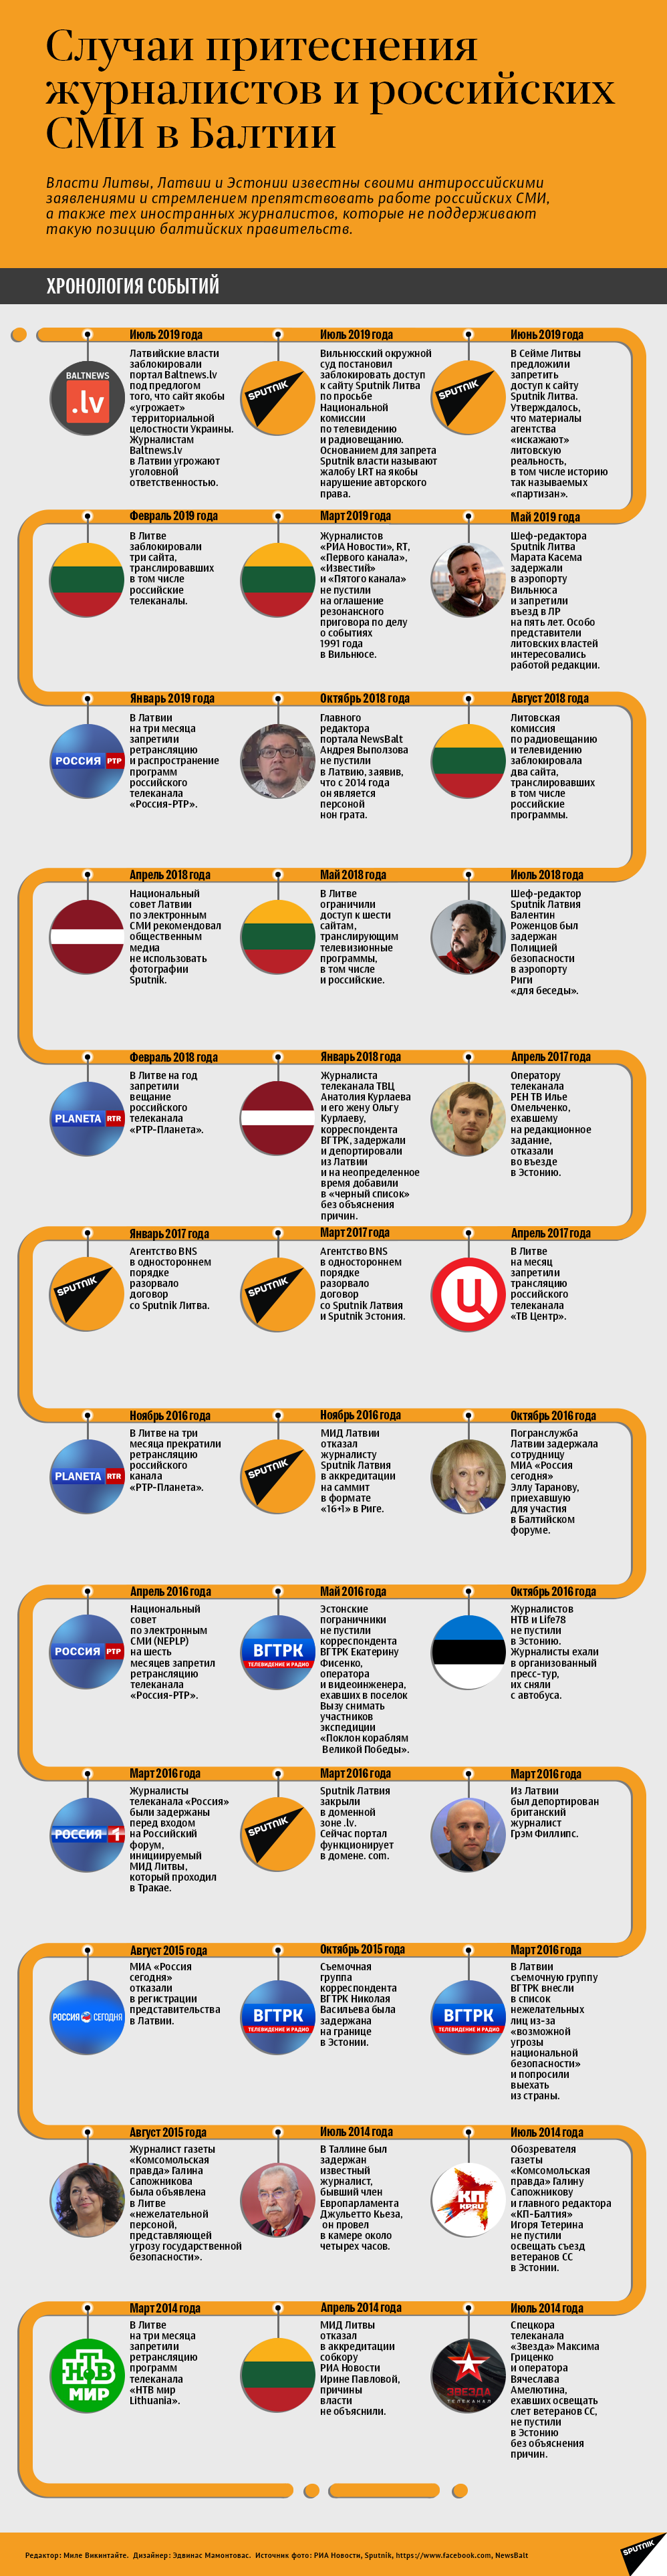 Инфографика: случаи притеснения российских журналистов в странах Балтии